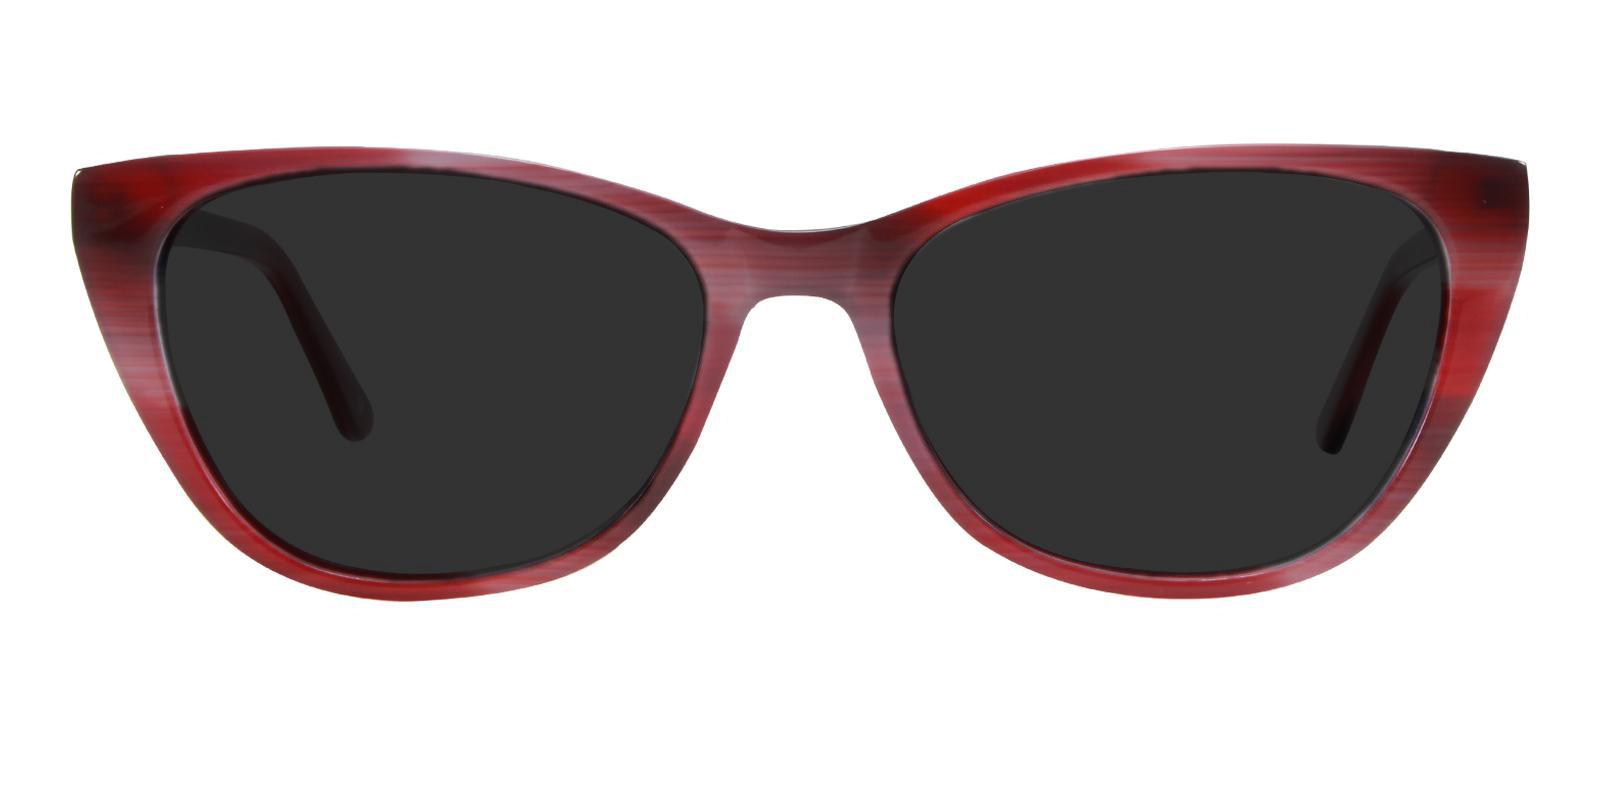 Ledger Red Acetate SpringHinges , Sunglasses , UniversalBridgeFit Frames from ABBE Glasses